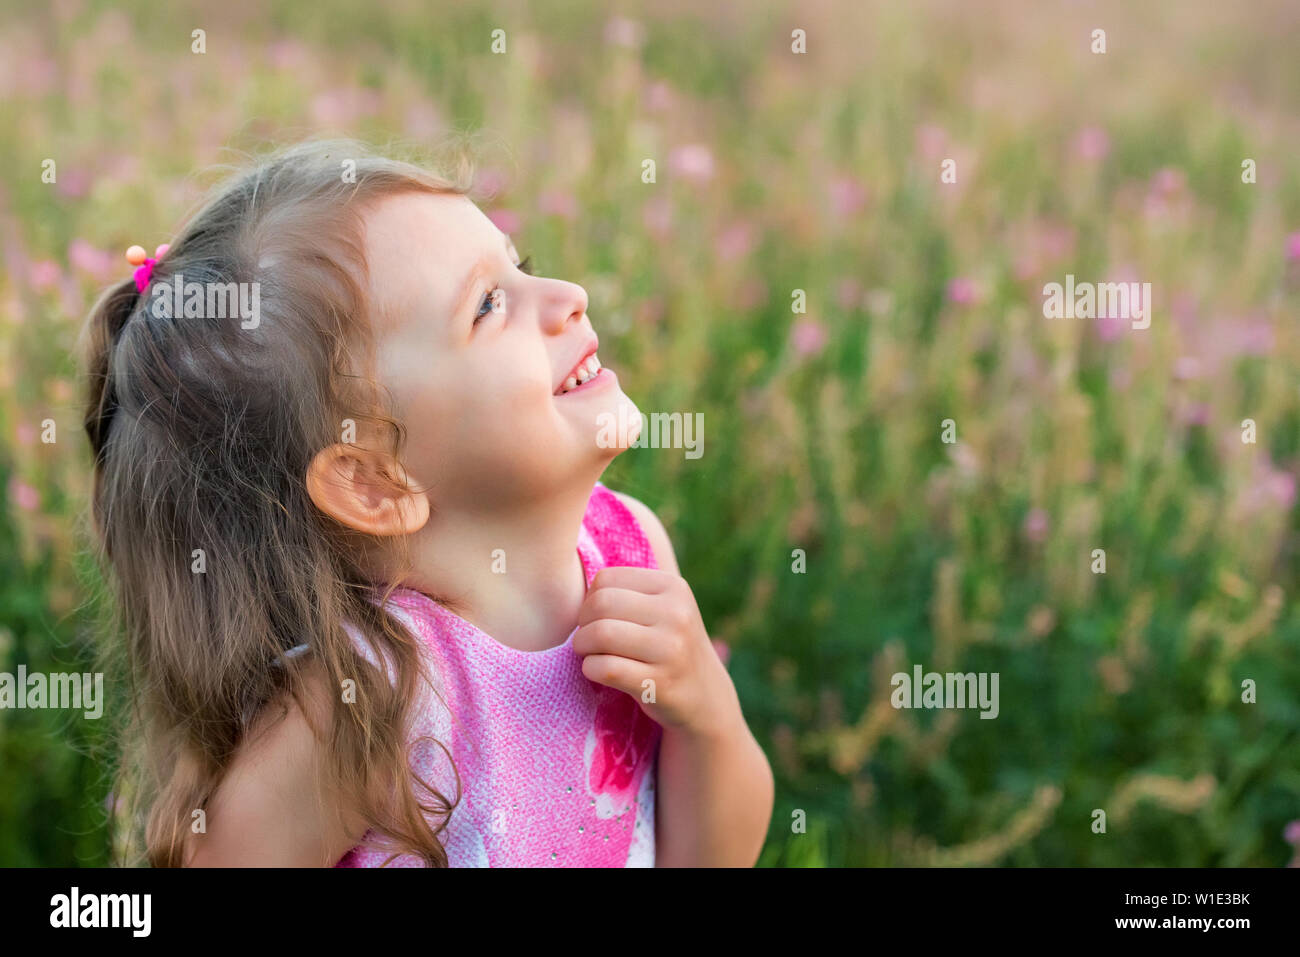 Nett lächelnden Mädchen sucht nach draußen im grünen Bereich. Kind Portrait Stockfoto